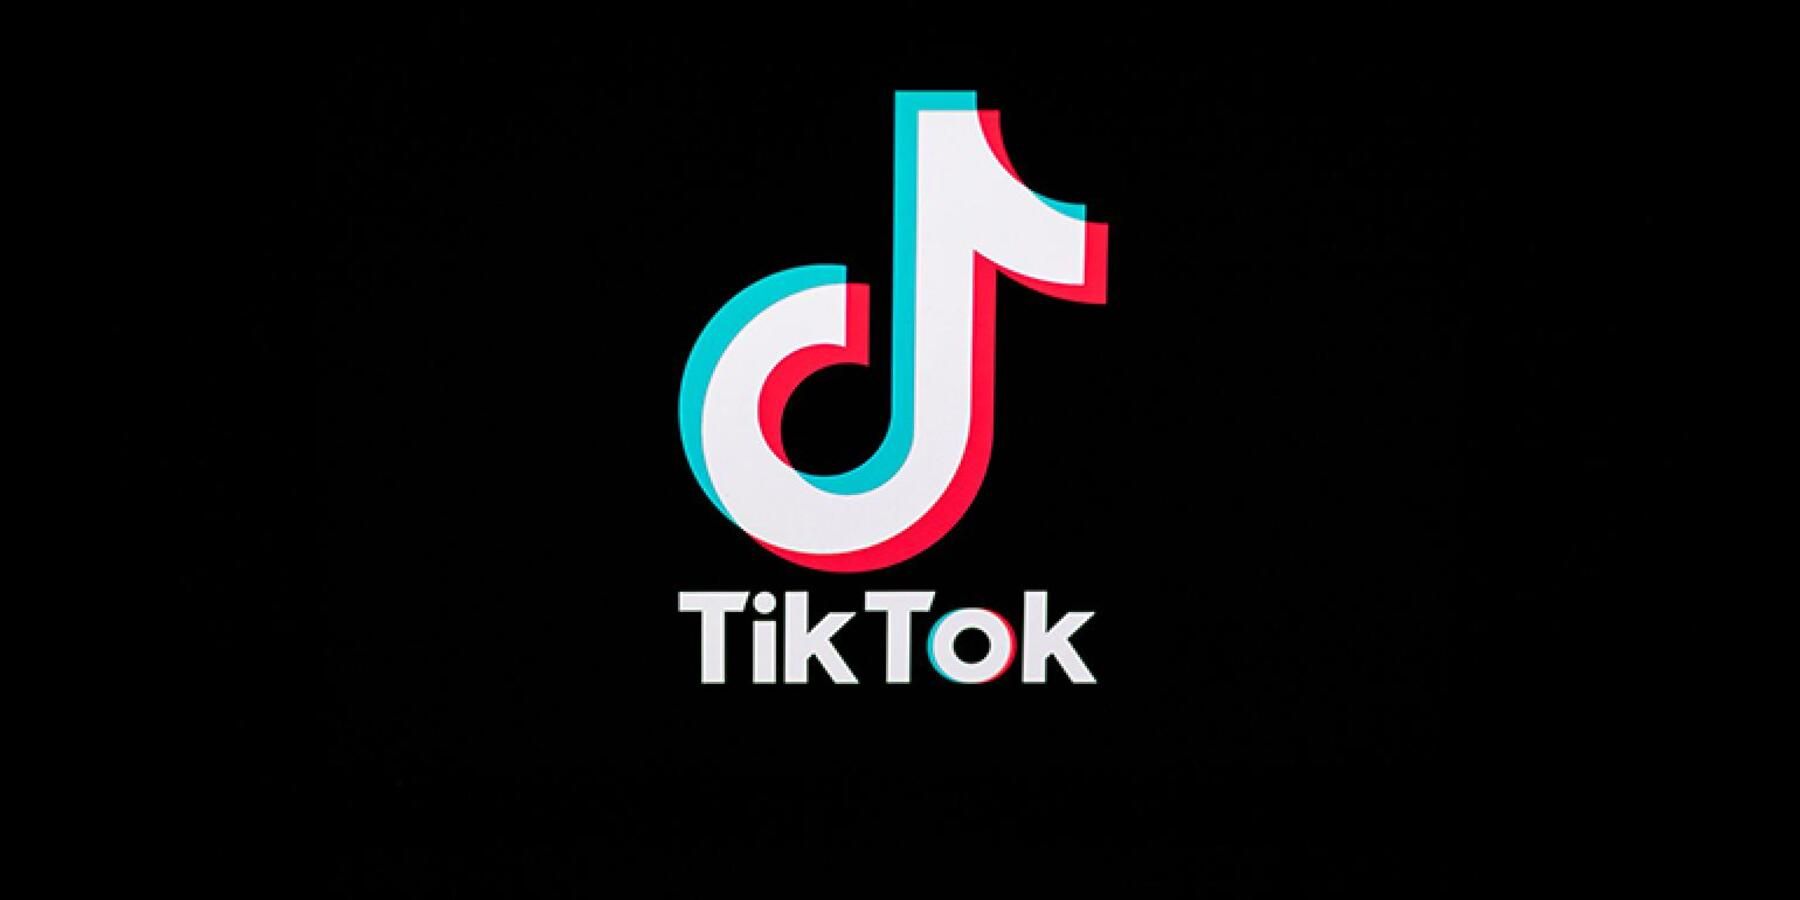 tik-tok-logo-black-backdrop